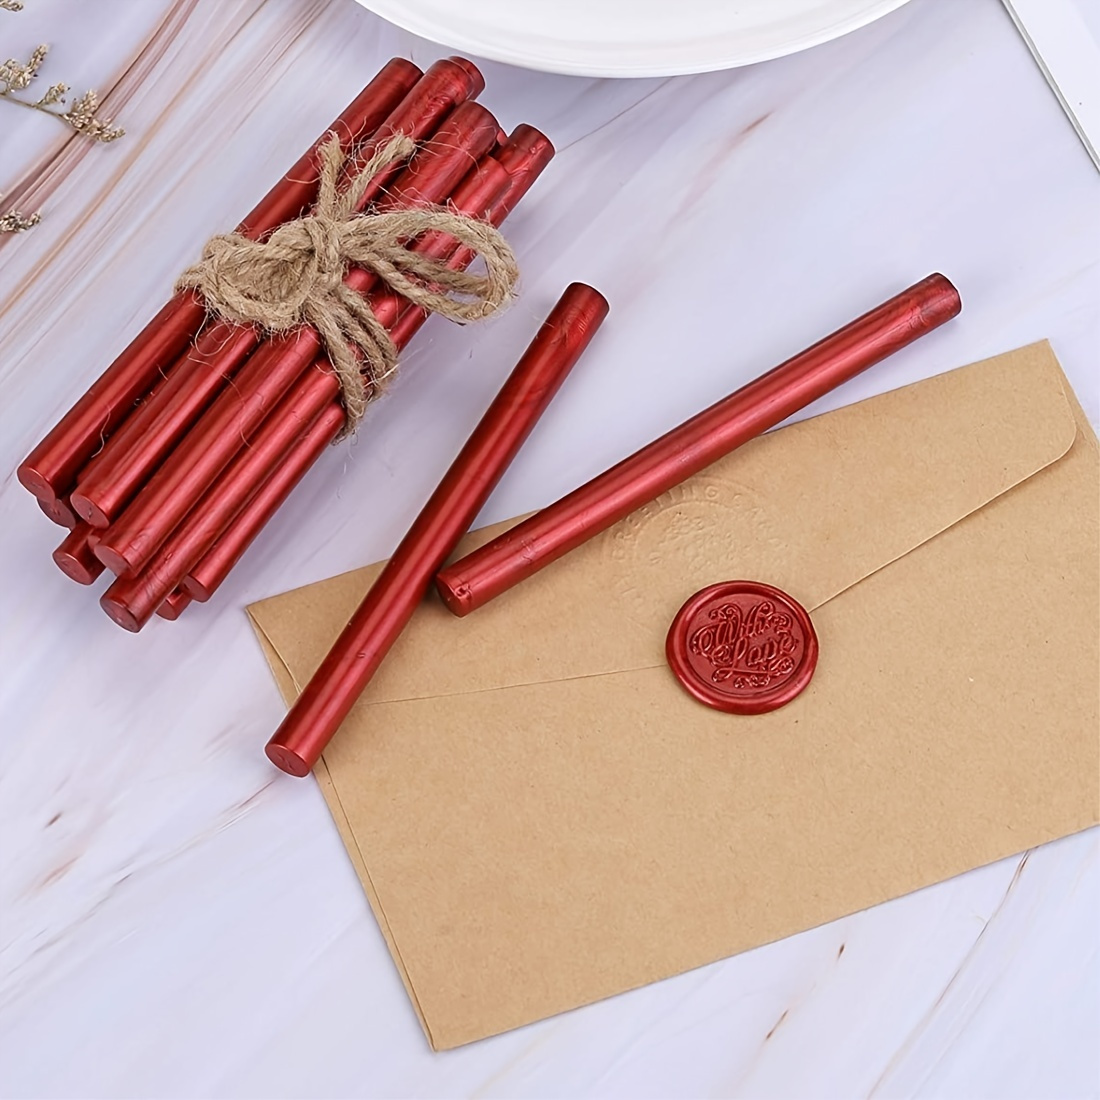 6 unidades de sello de cera de lacre rojo sello de cera palos decorativos  invitaciones de boda tarjetas de regalo sellado cera sello palo